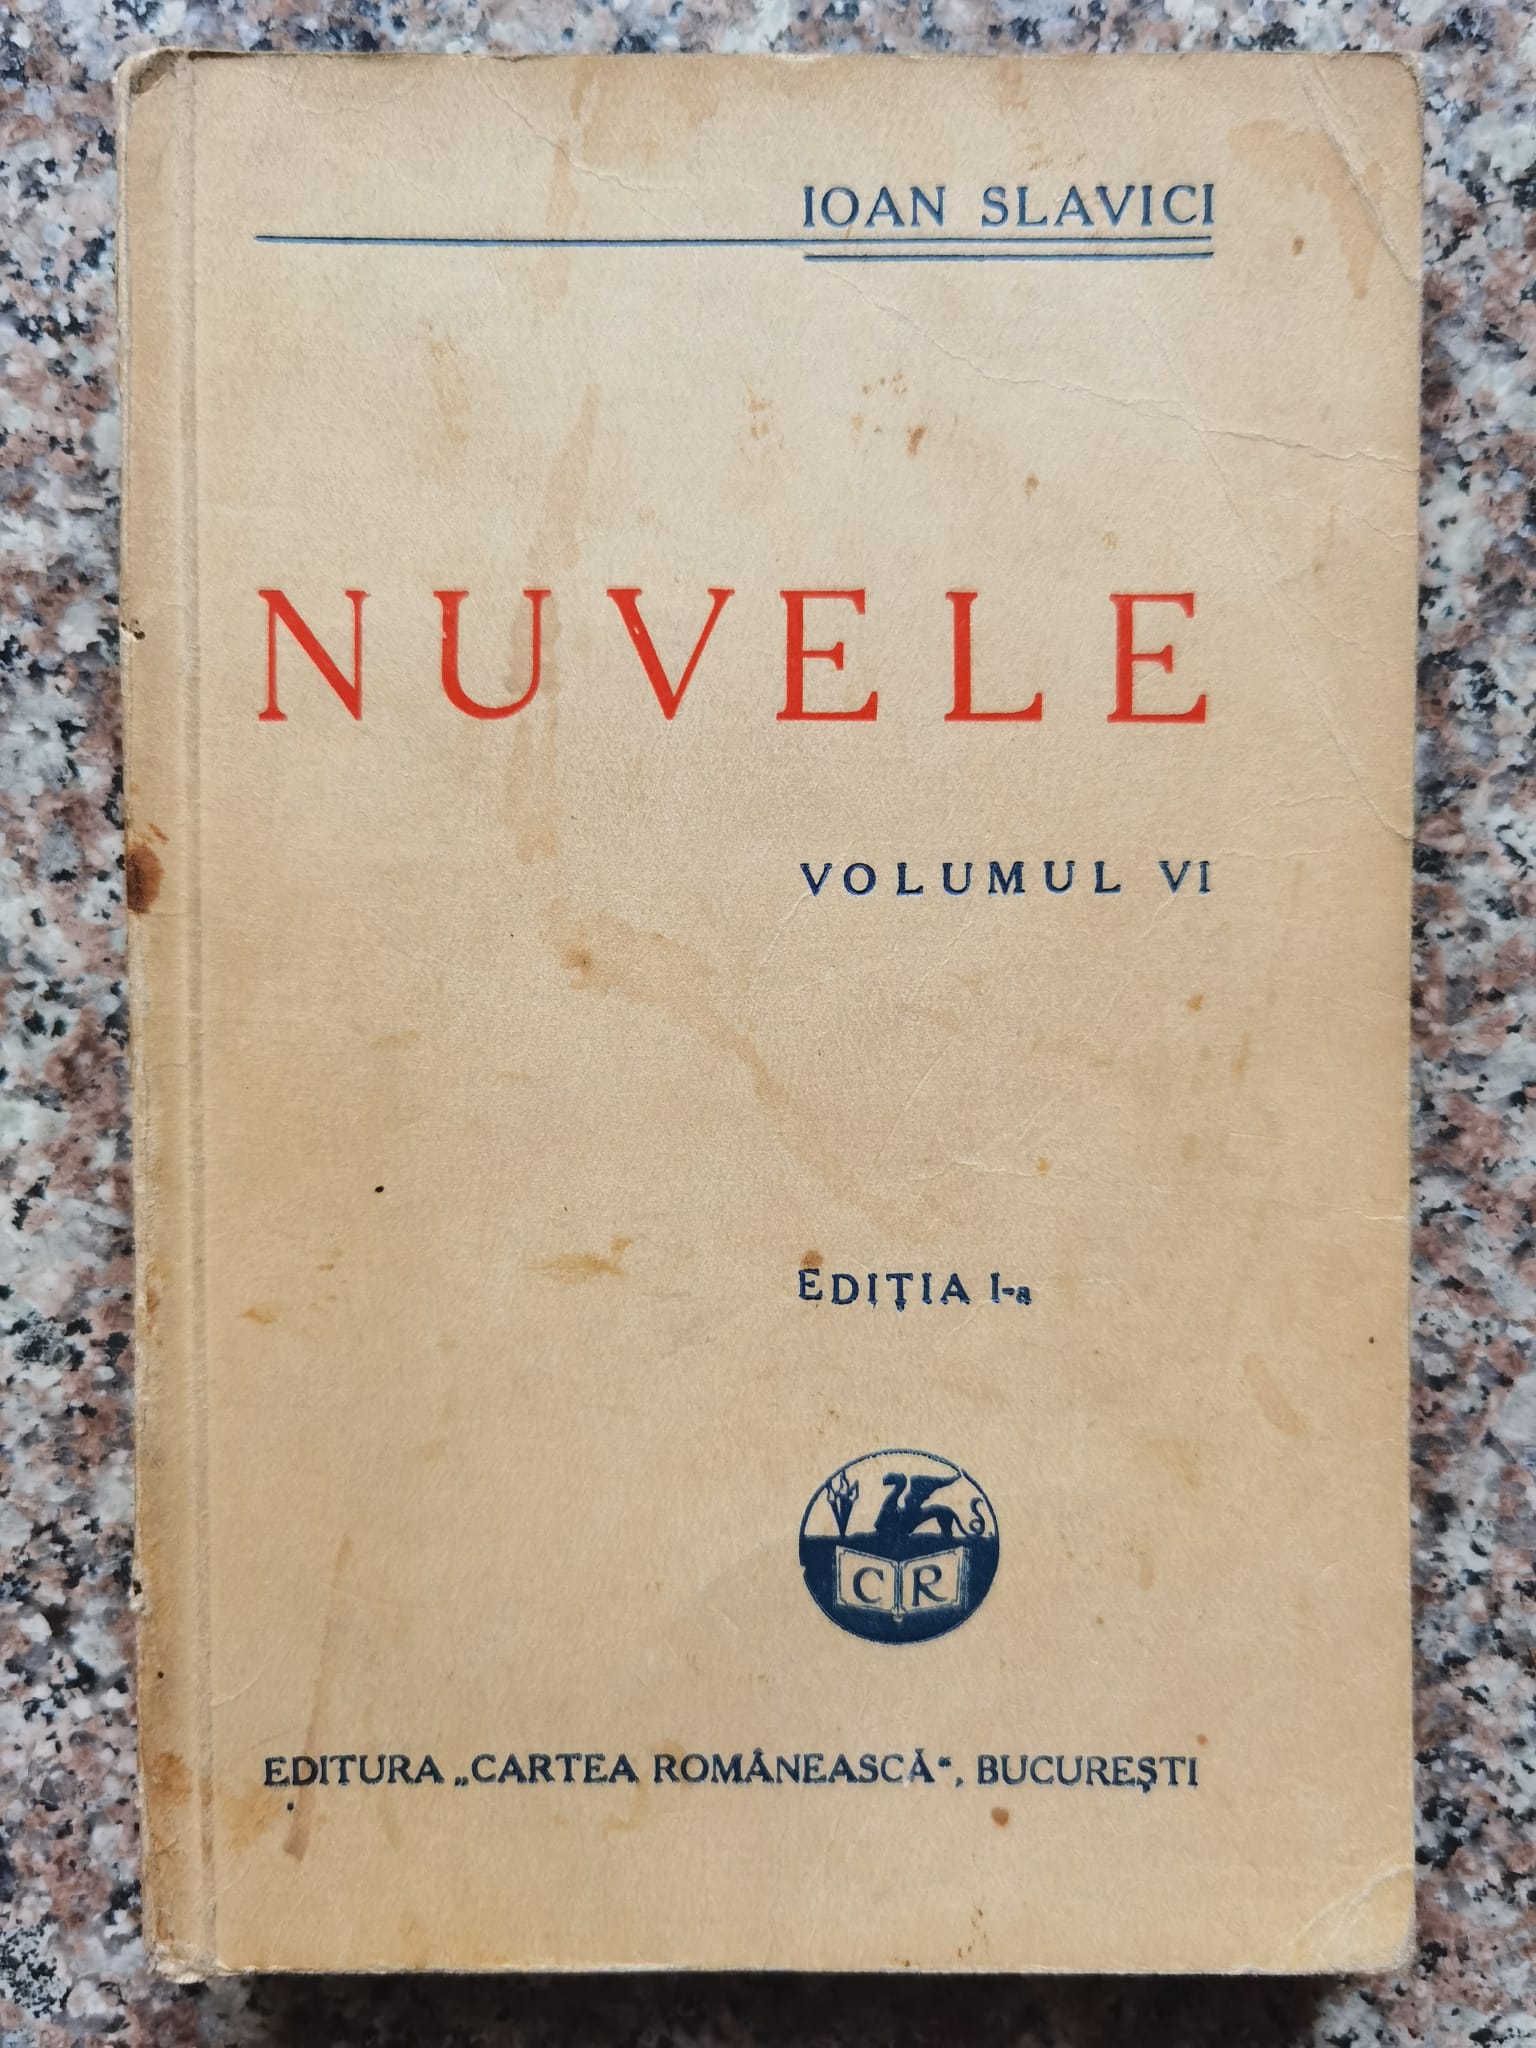 nuvele vol. 6 (prima editie)                                                                         ioan slavici                                                                                        